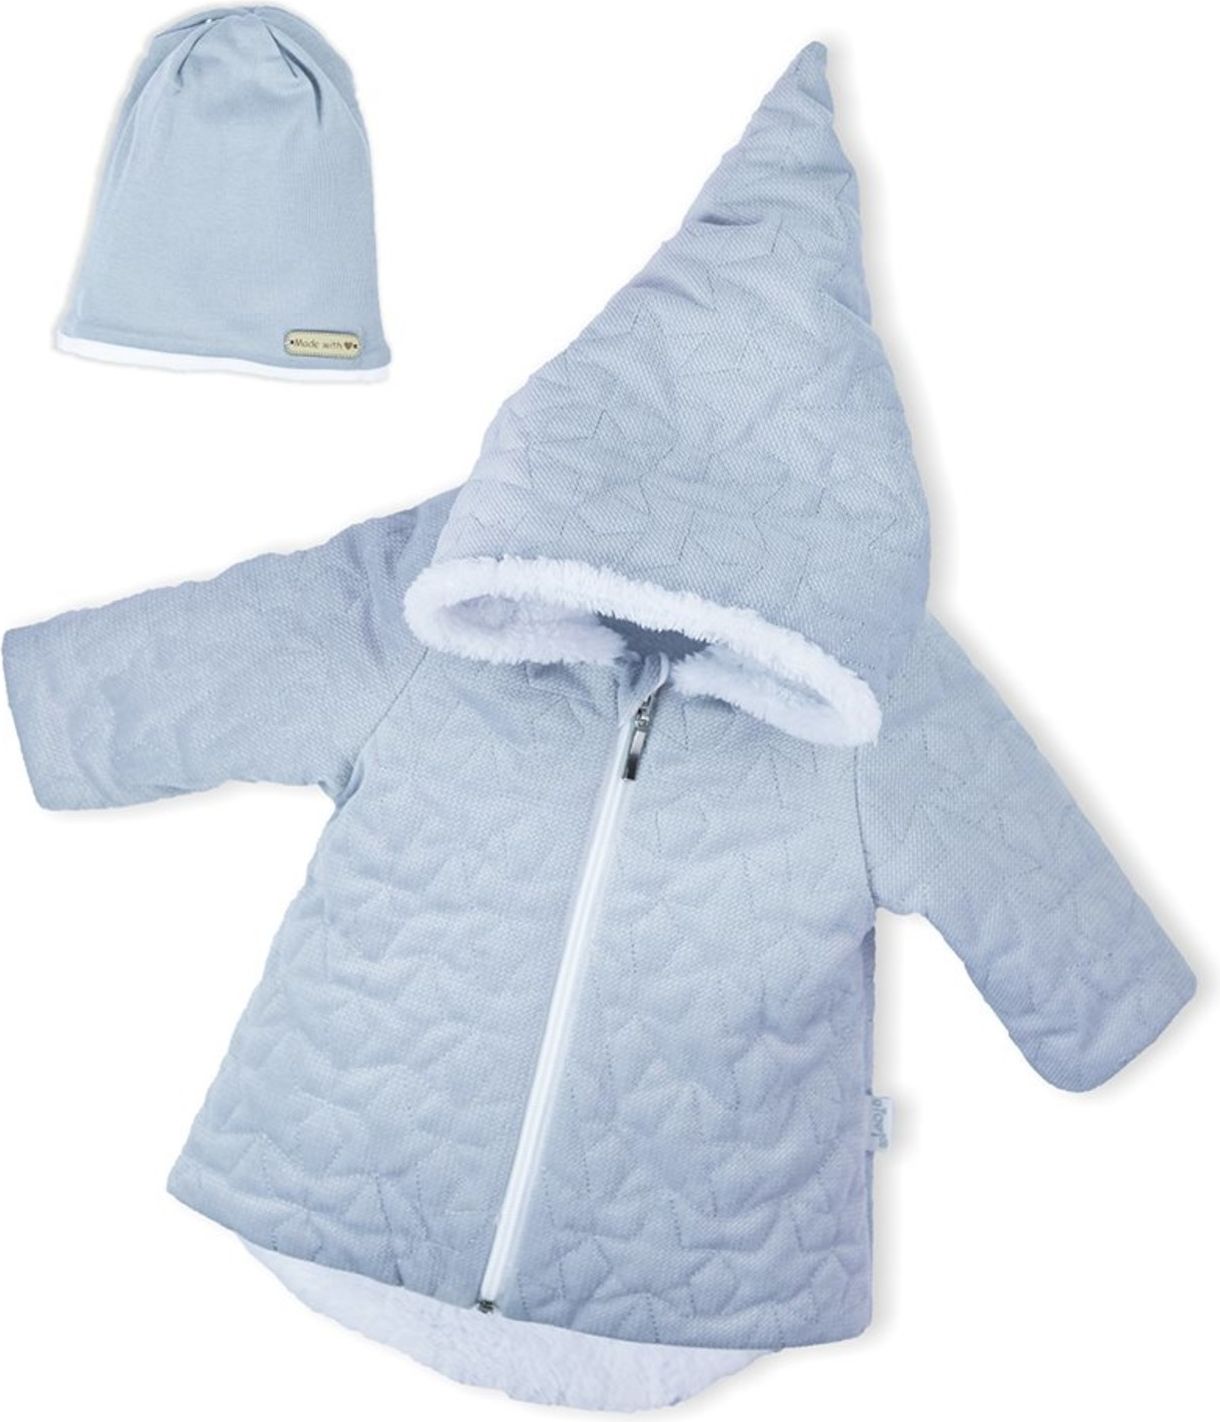 Zimní kojenecký kabátek s čepičkou Nicol Kids Winter šedý - Zimní kojenecký kabátek s čepičkou Nicol Kids Winter šedý - obrázek 1